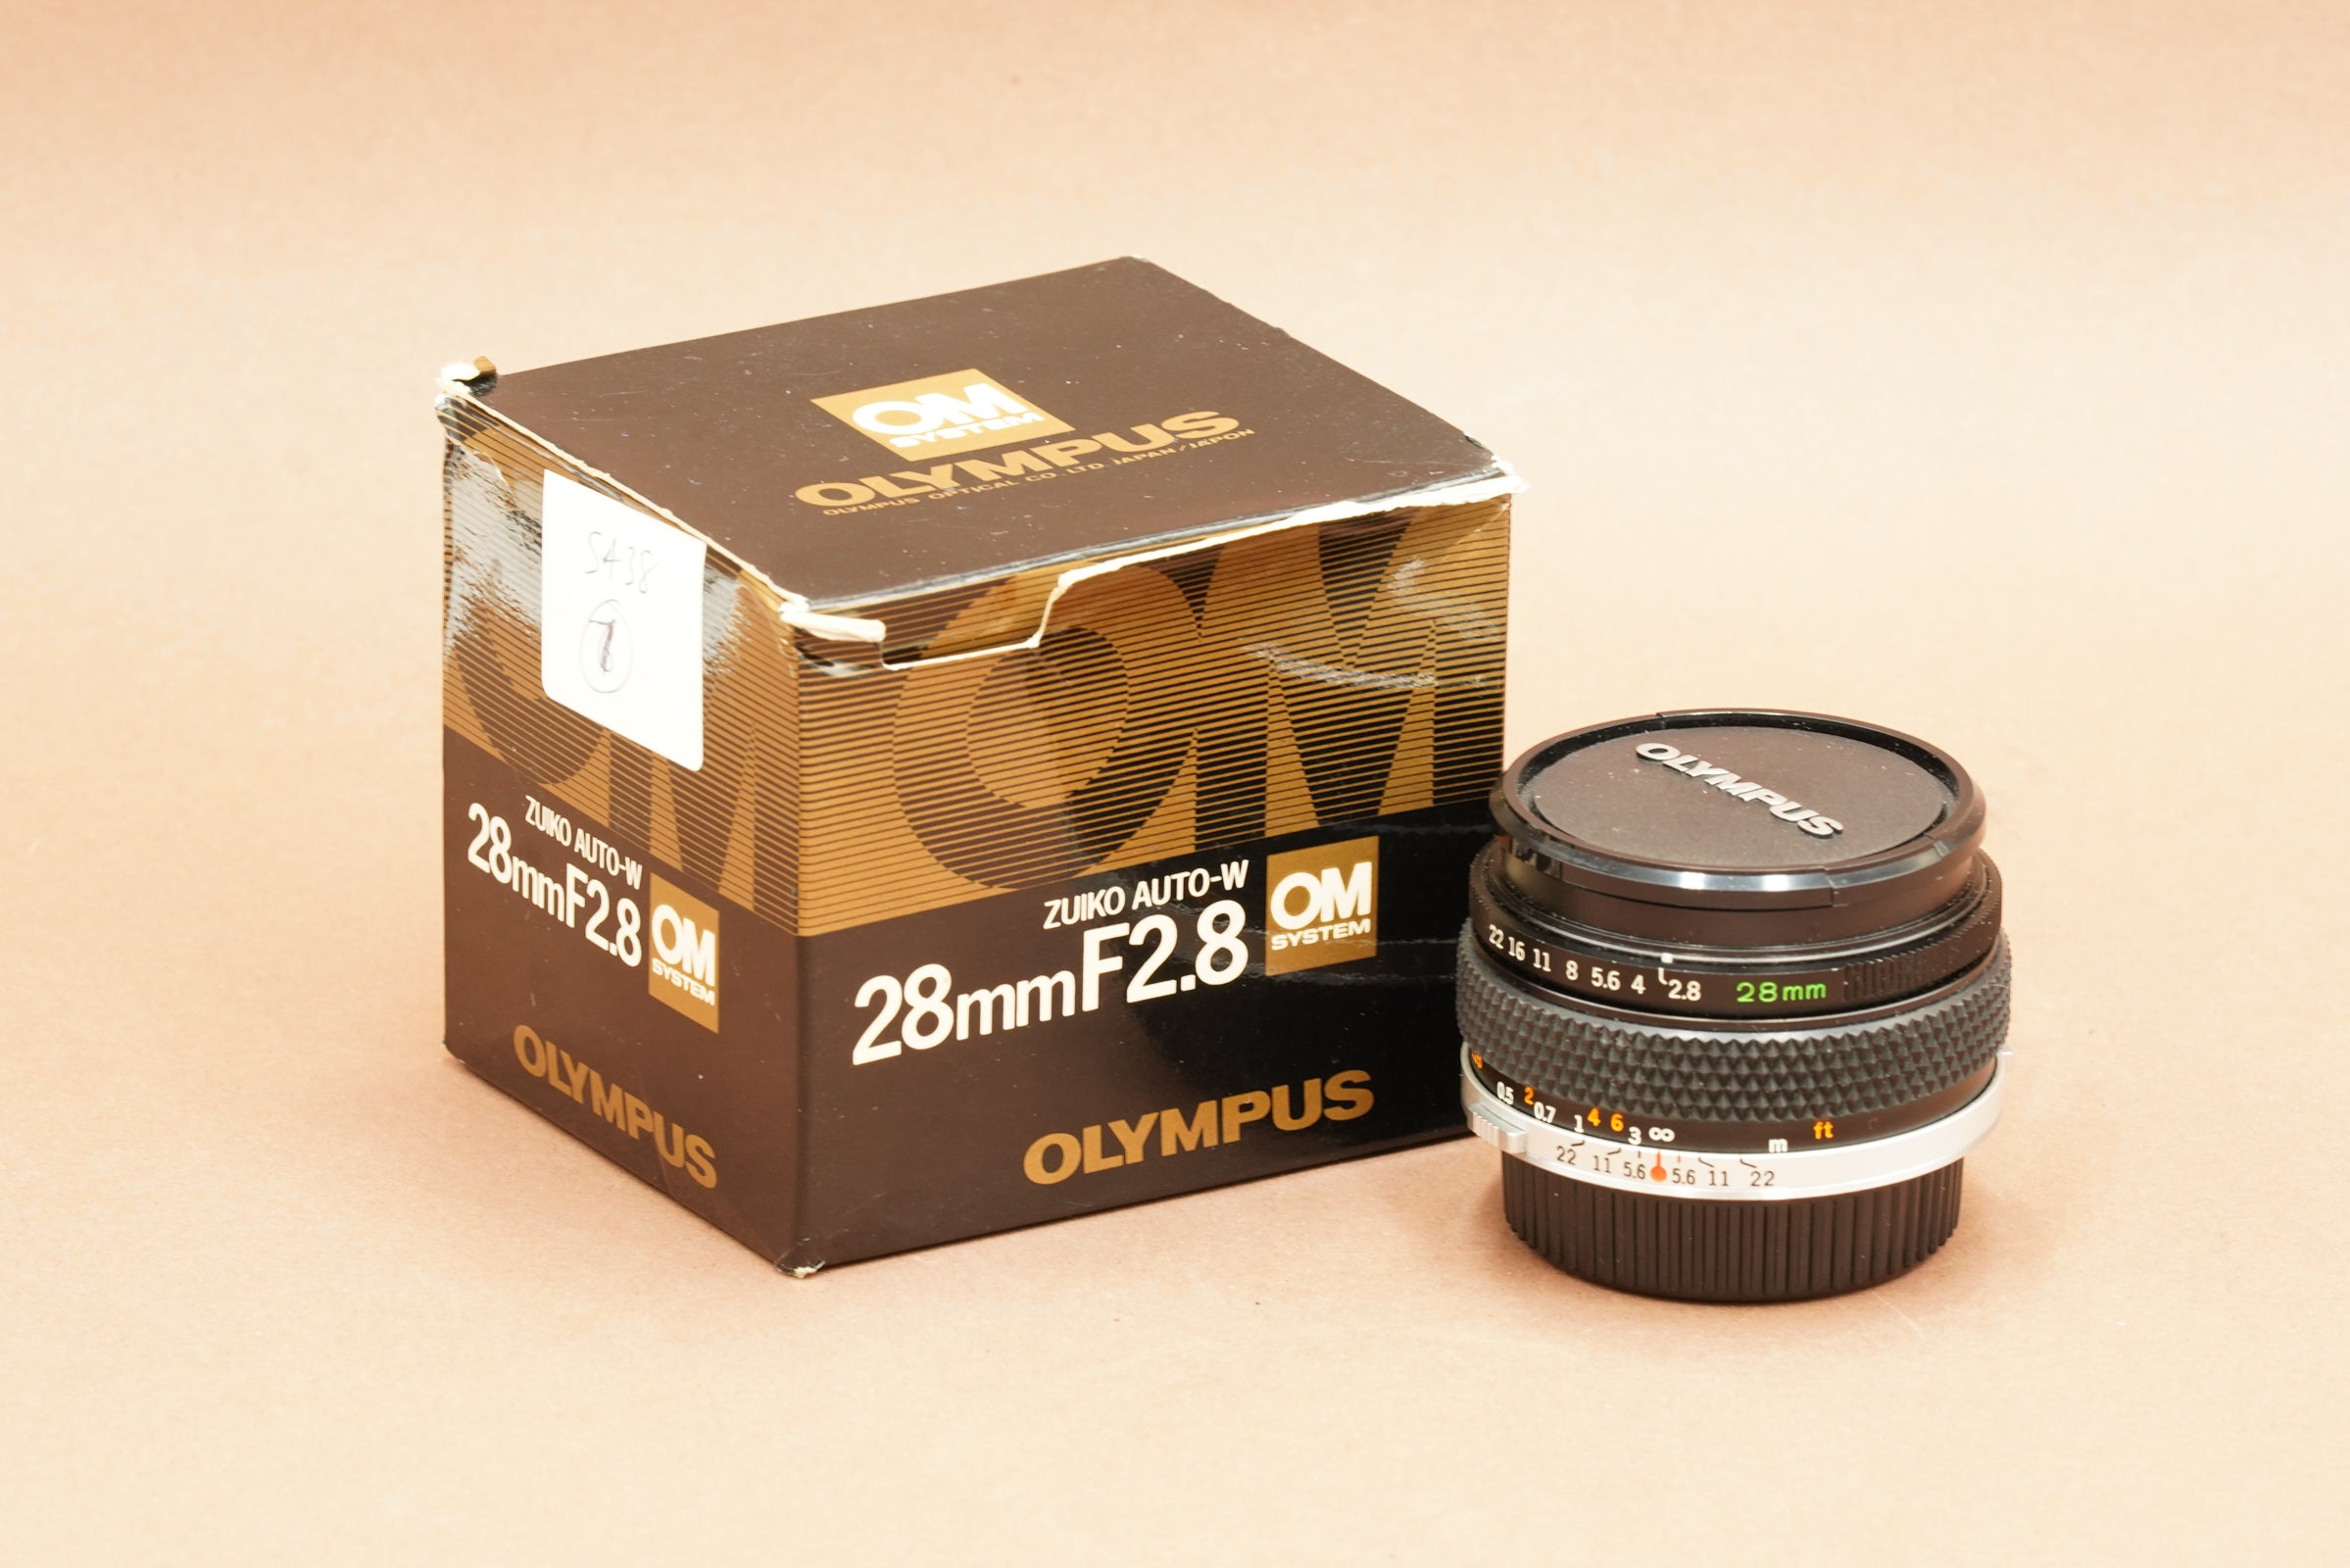 Olympus OM 28mm f2.8 with BOX